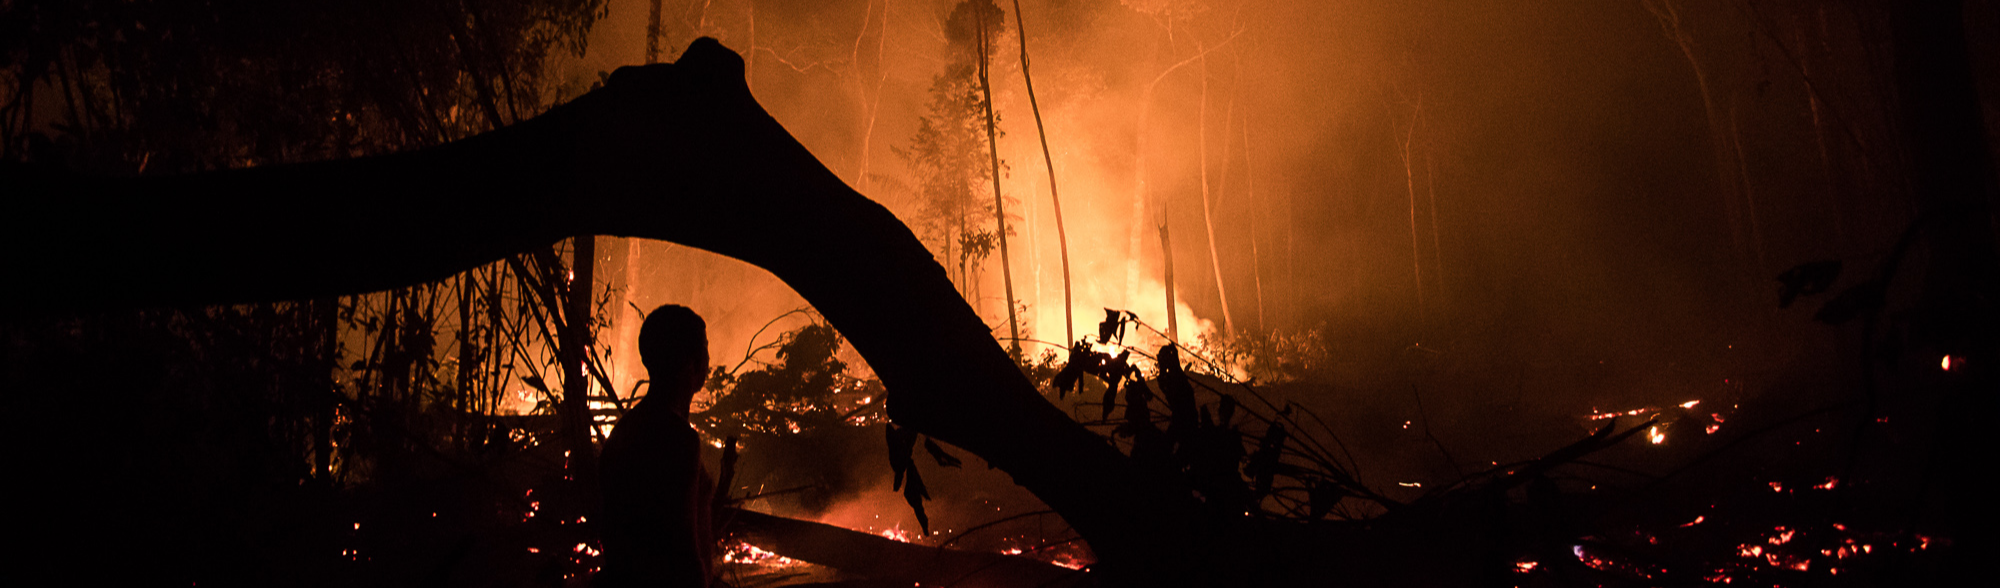 Com recorde de desmatamento, queimadas consomem árvores e animais no Amazonas